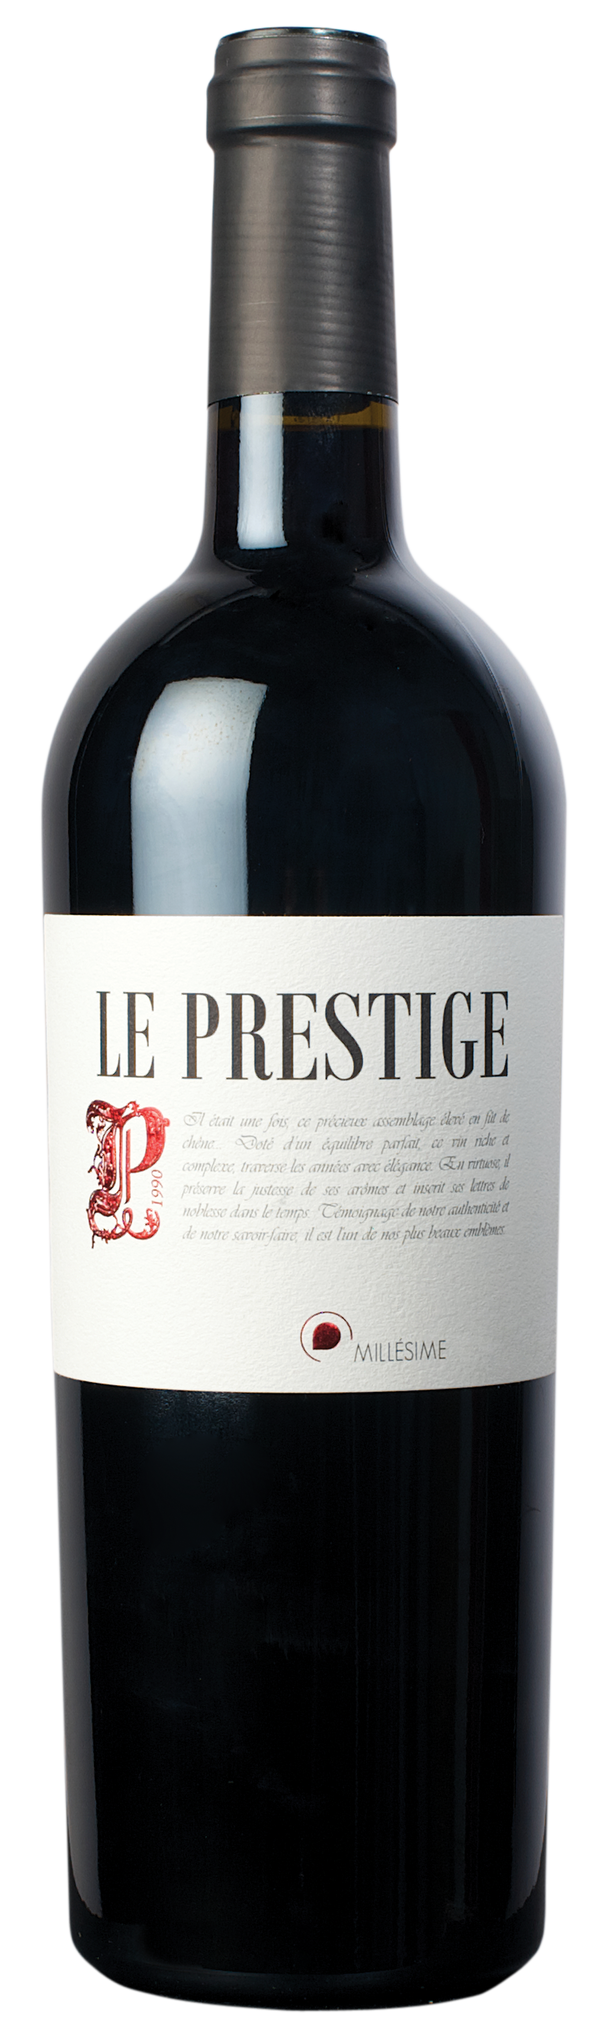 Le Prestige Brdx Blend Oak Aged, Bourdic, Pays d'Oc (Magnum) 3x150cl - Just Wines 